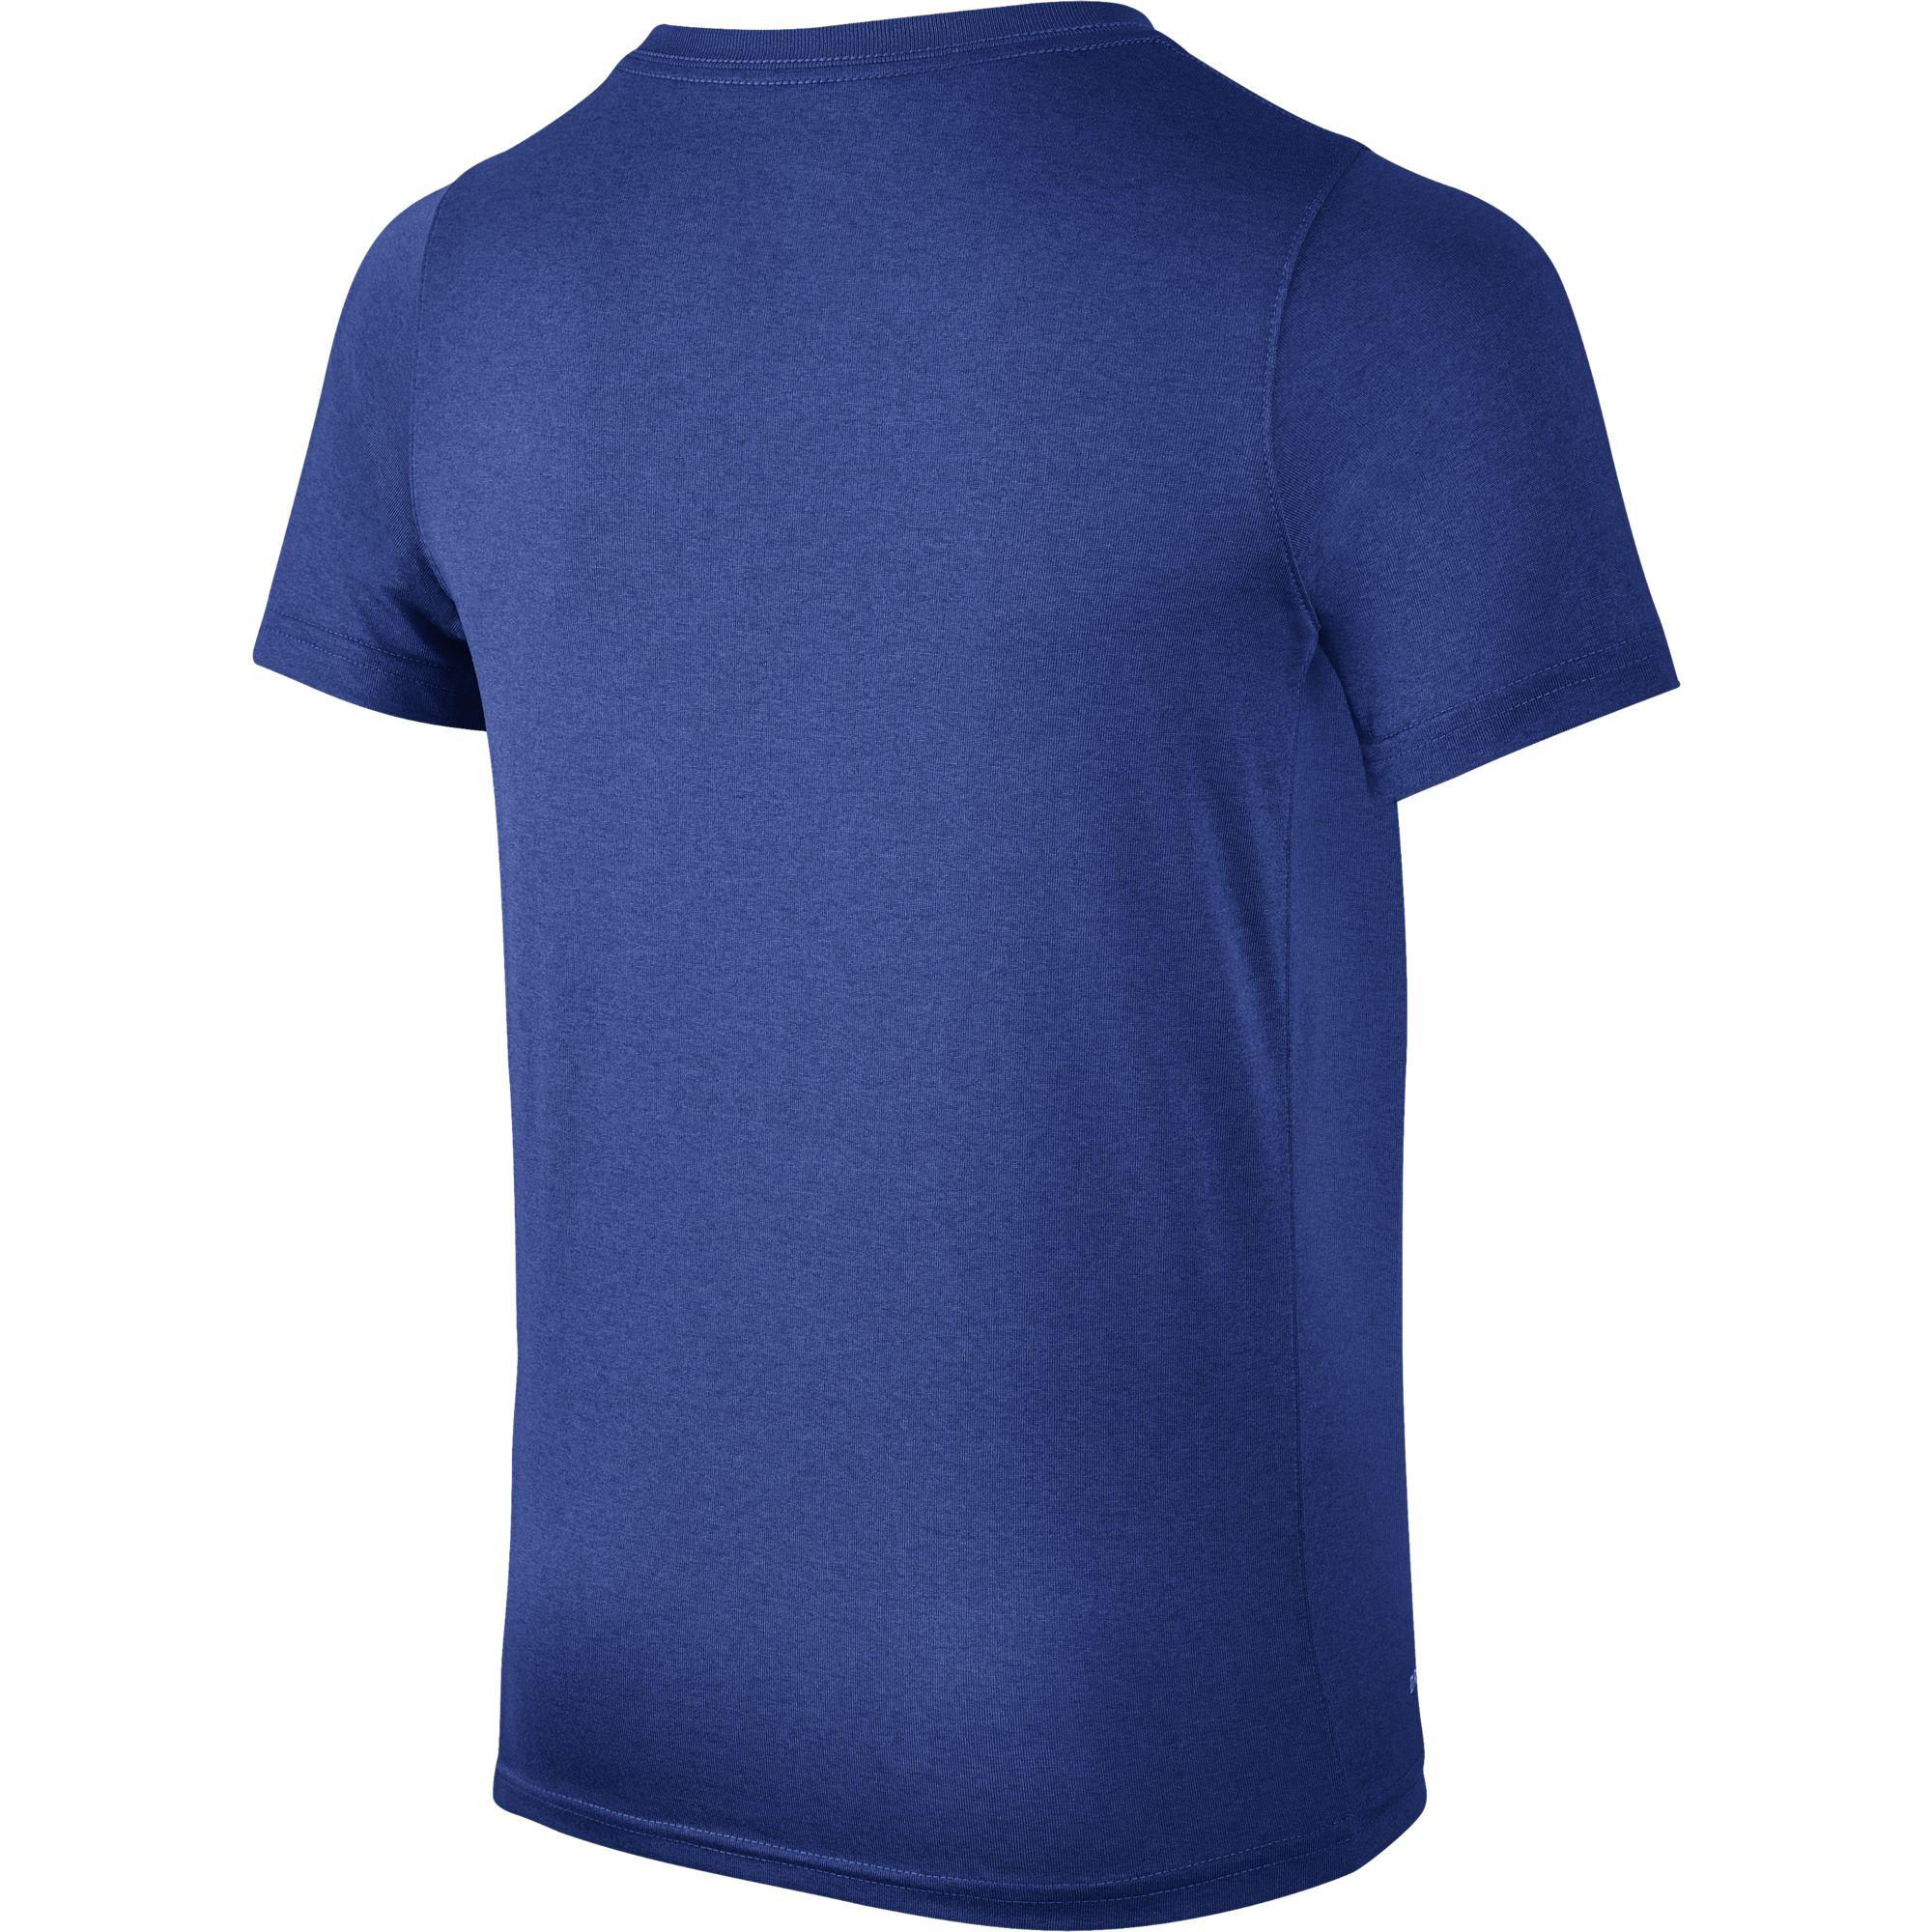 Nike Boys Dry Training T-Shirt - Game Royal/Blue - Tennisnuts.com